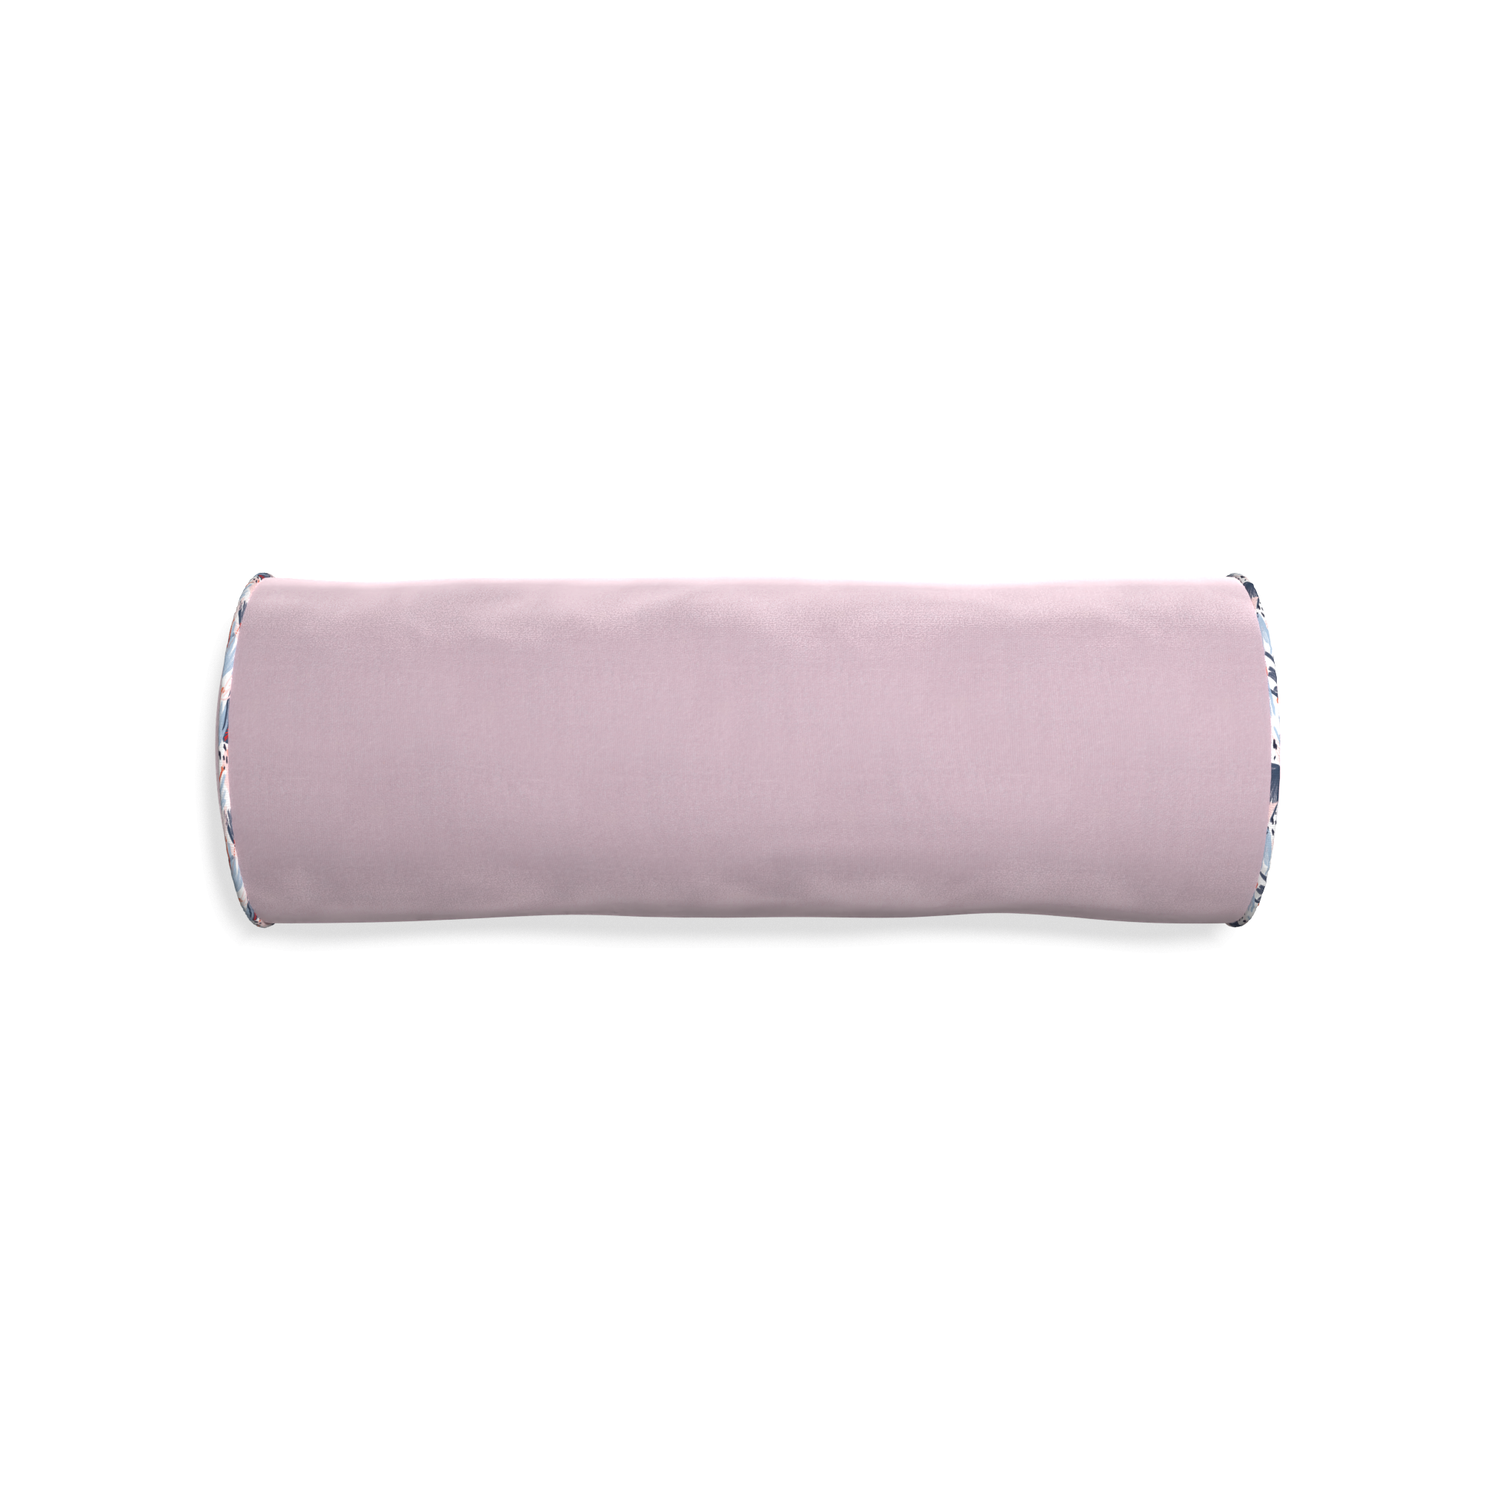 Bolster lilac velvet custom pillow with e piping on white background